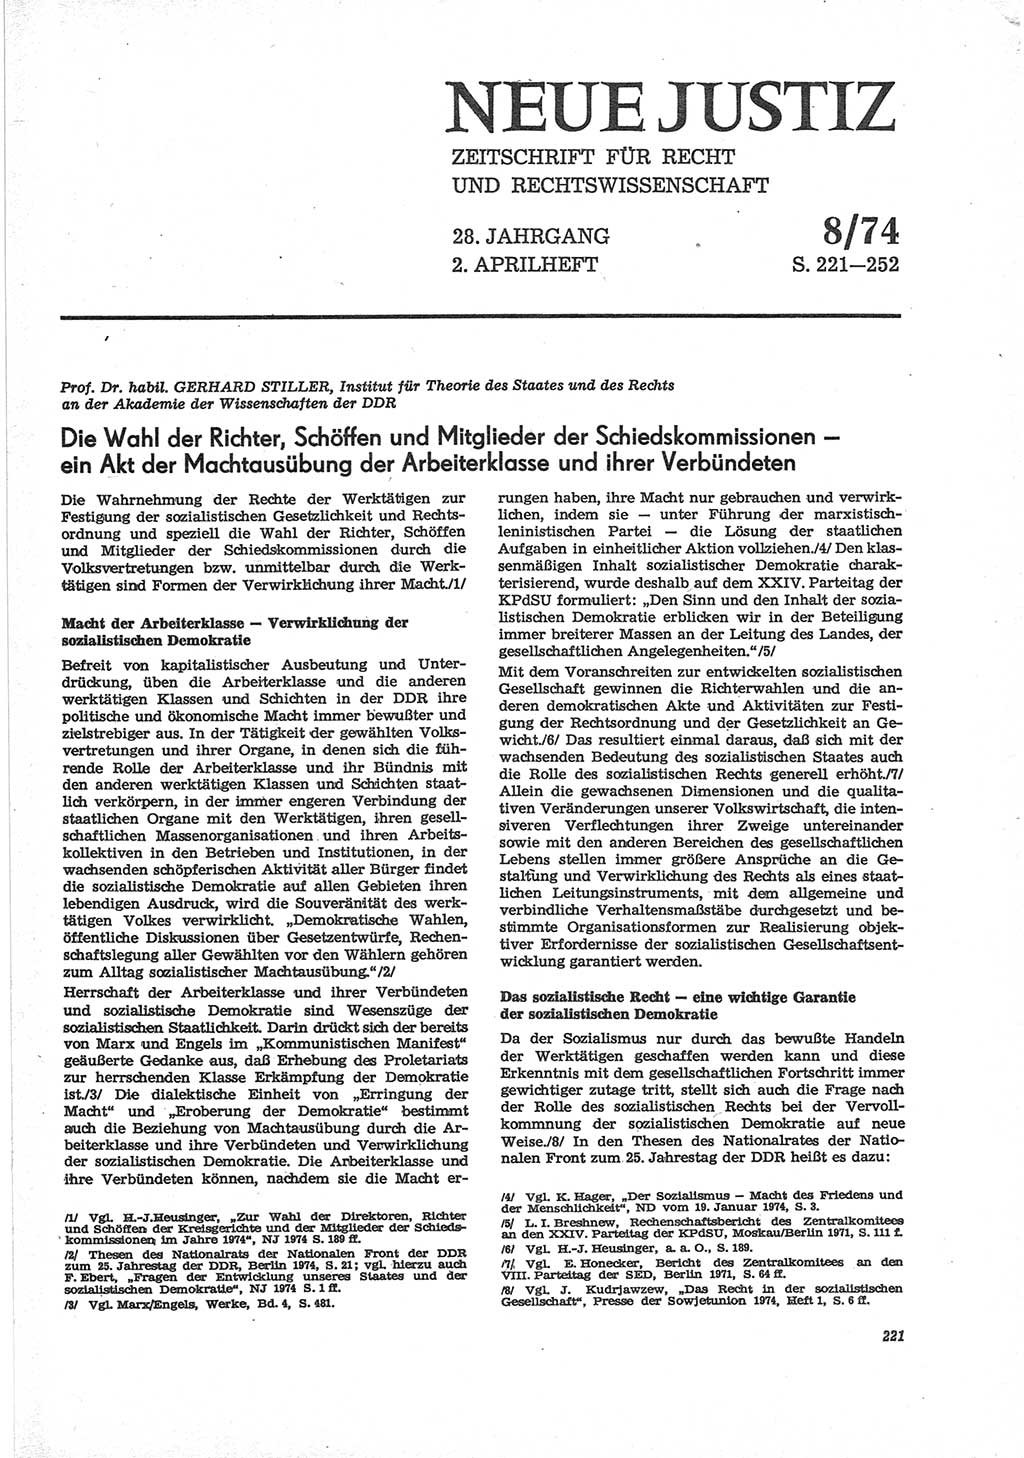 Neue Justiz (NJ), Zeitschrift für Recht und Rechtswissenschaft [Deutsche Demokratische Republik (DDR)], 28. Jahrgang 1974, Seite 221 (NJ DDR 1974, S. 221)